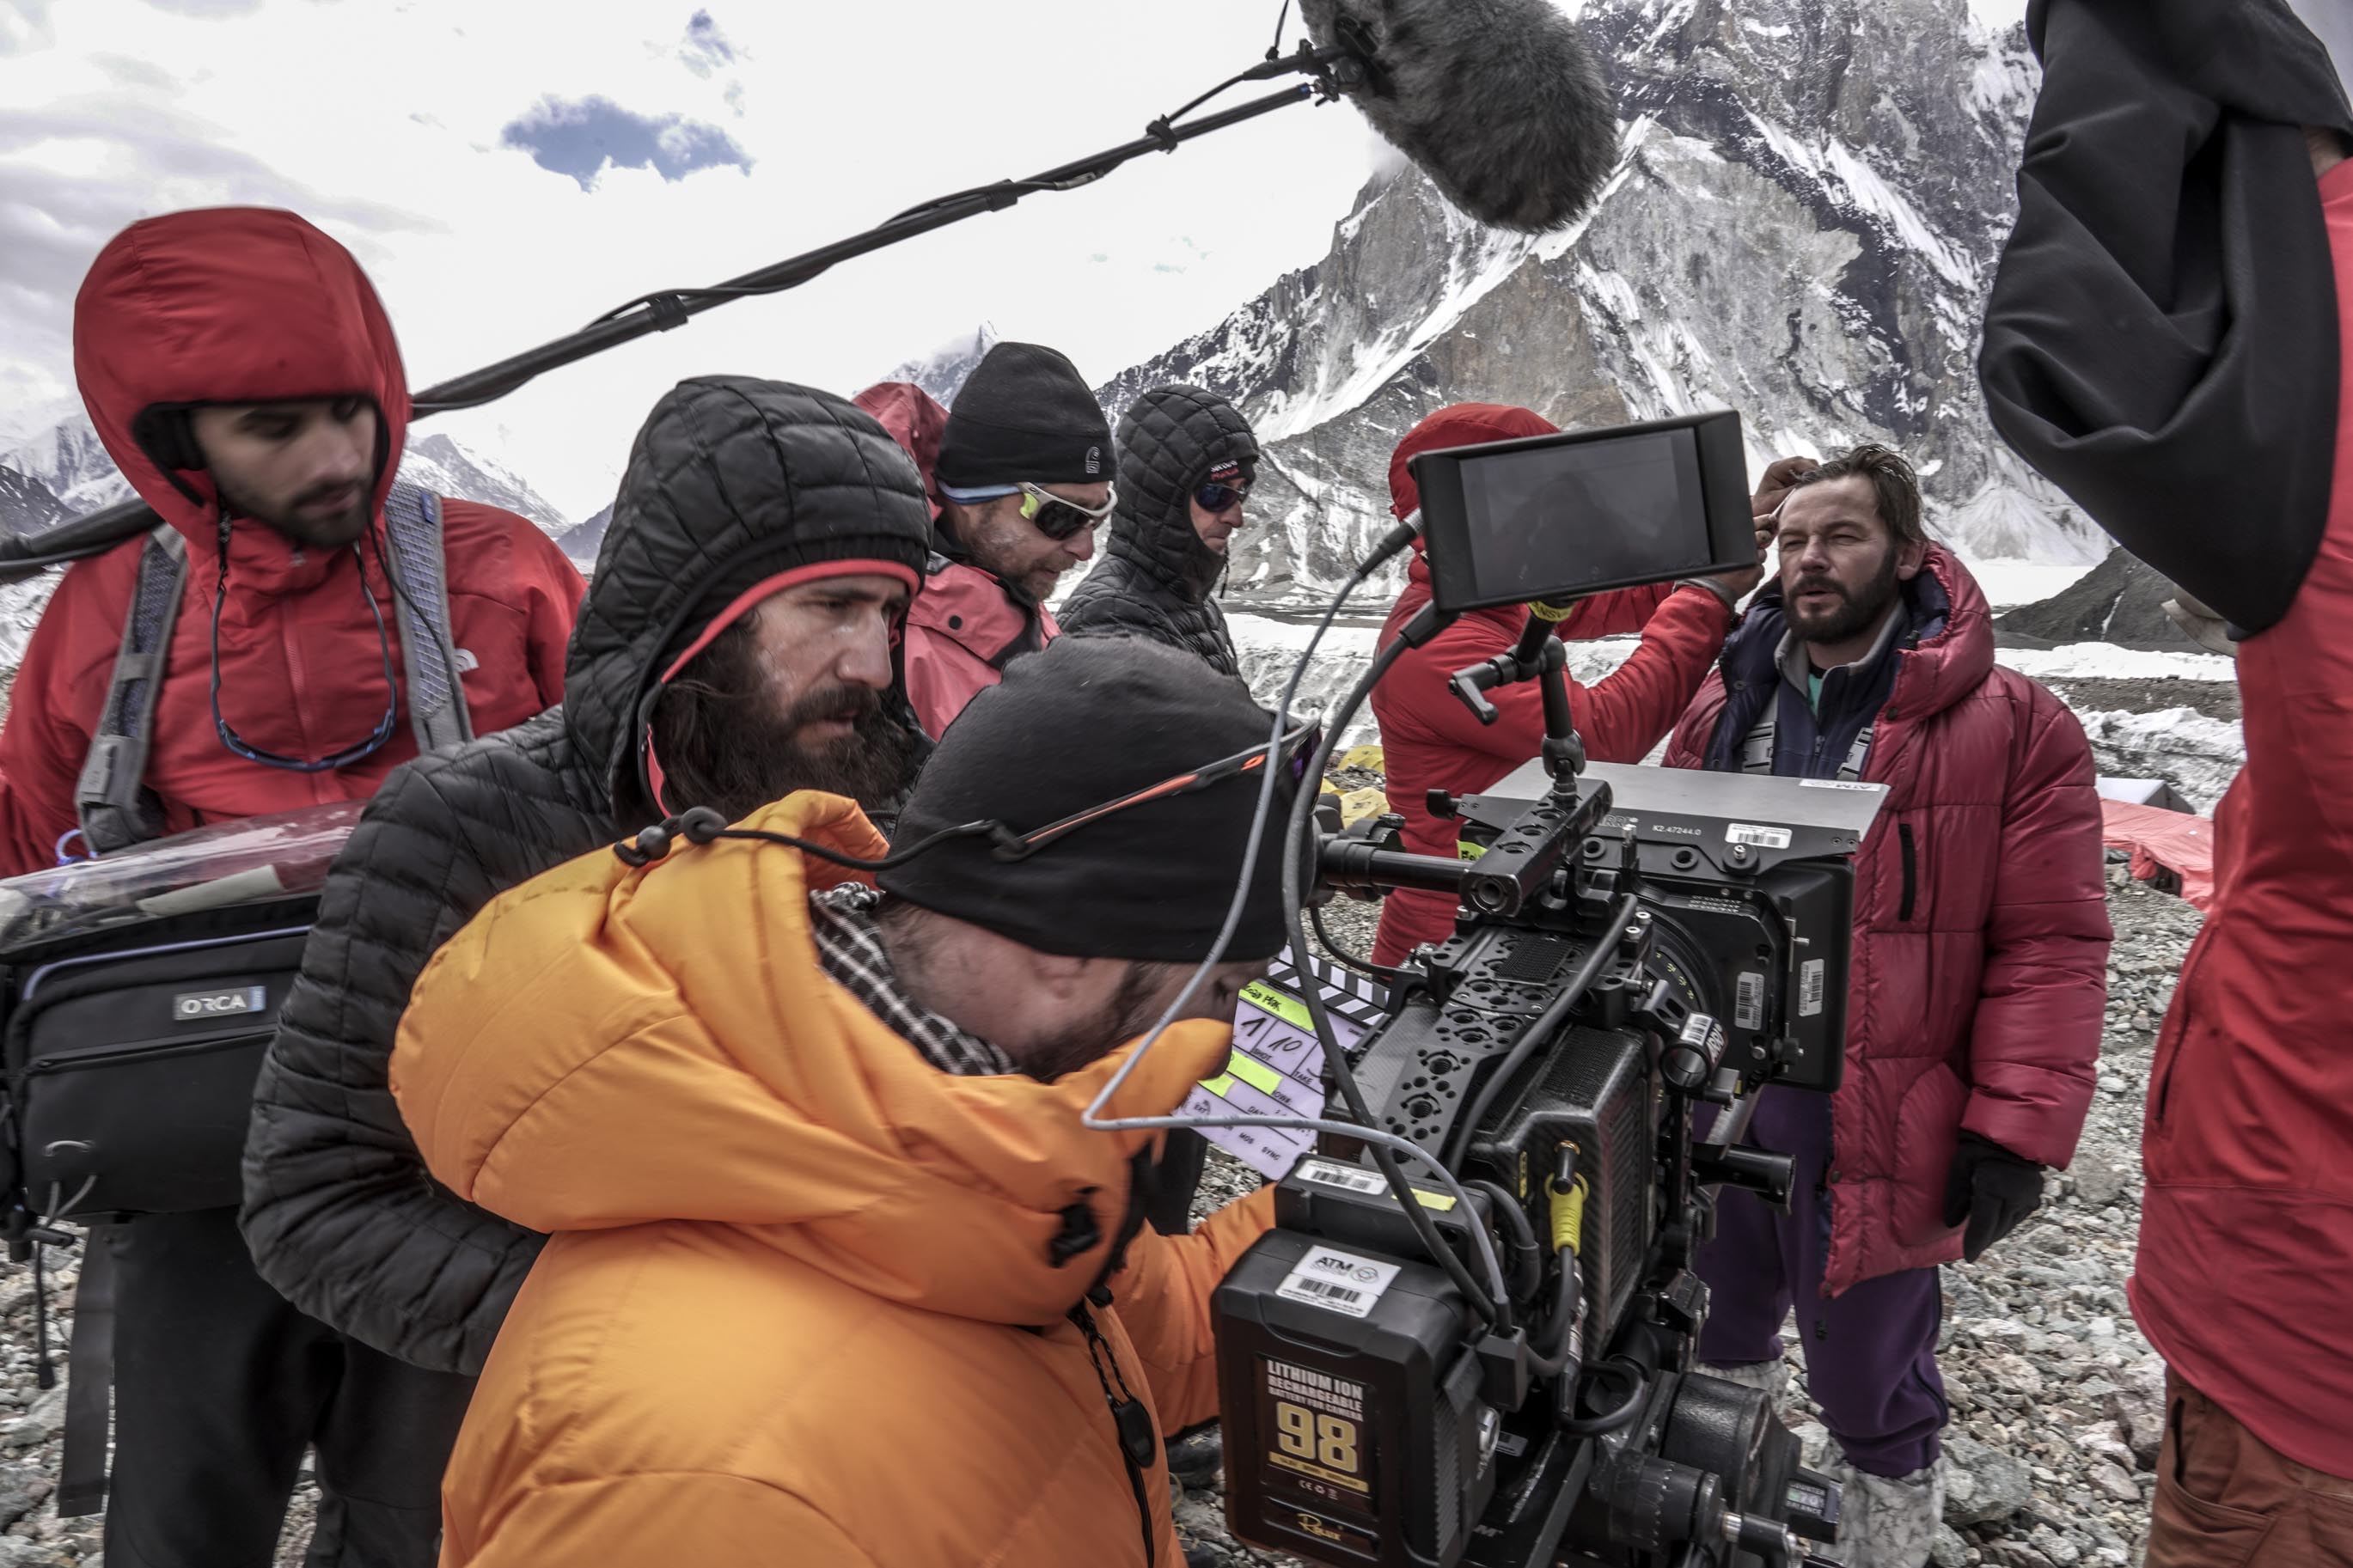 Broad Peak Film: Behind the Scenes